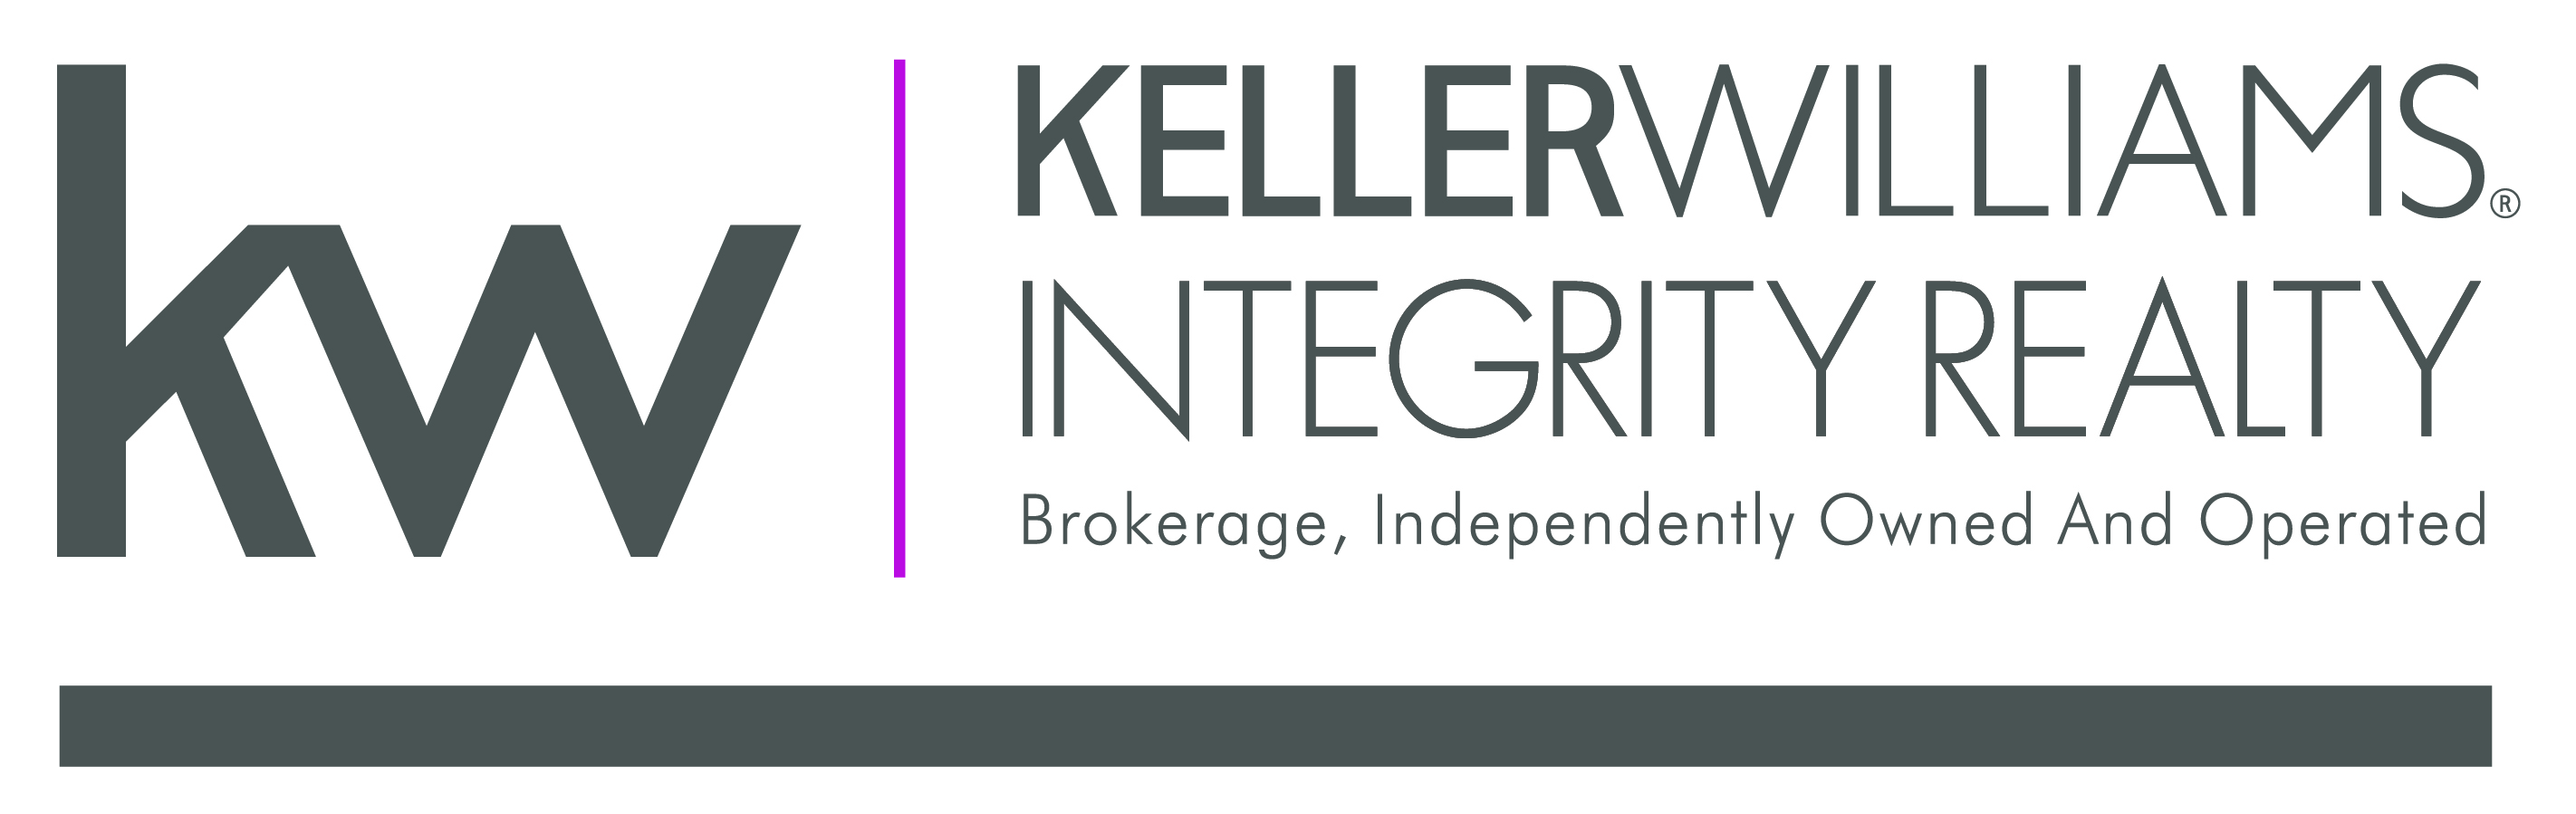 Keller Williams Integrity Realty Brokerage